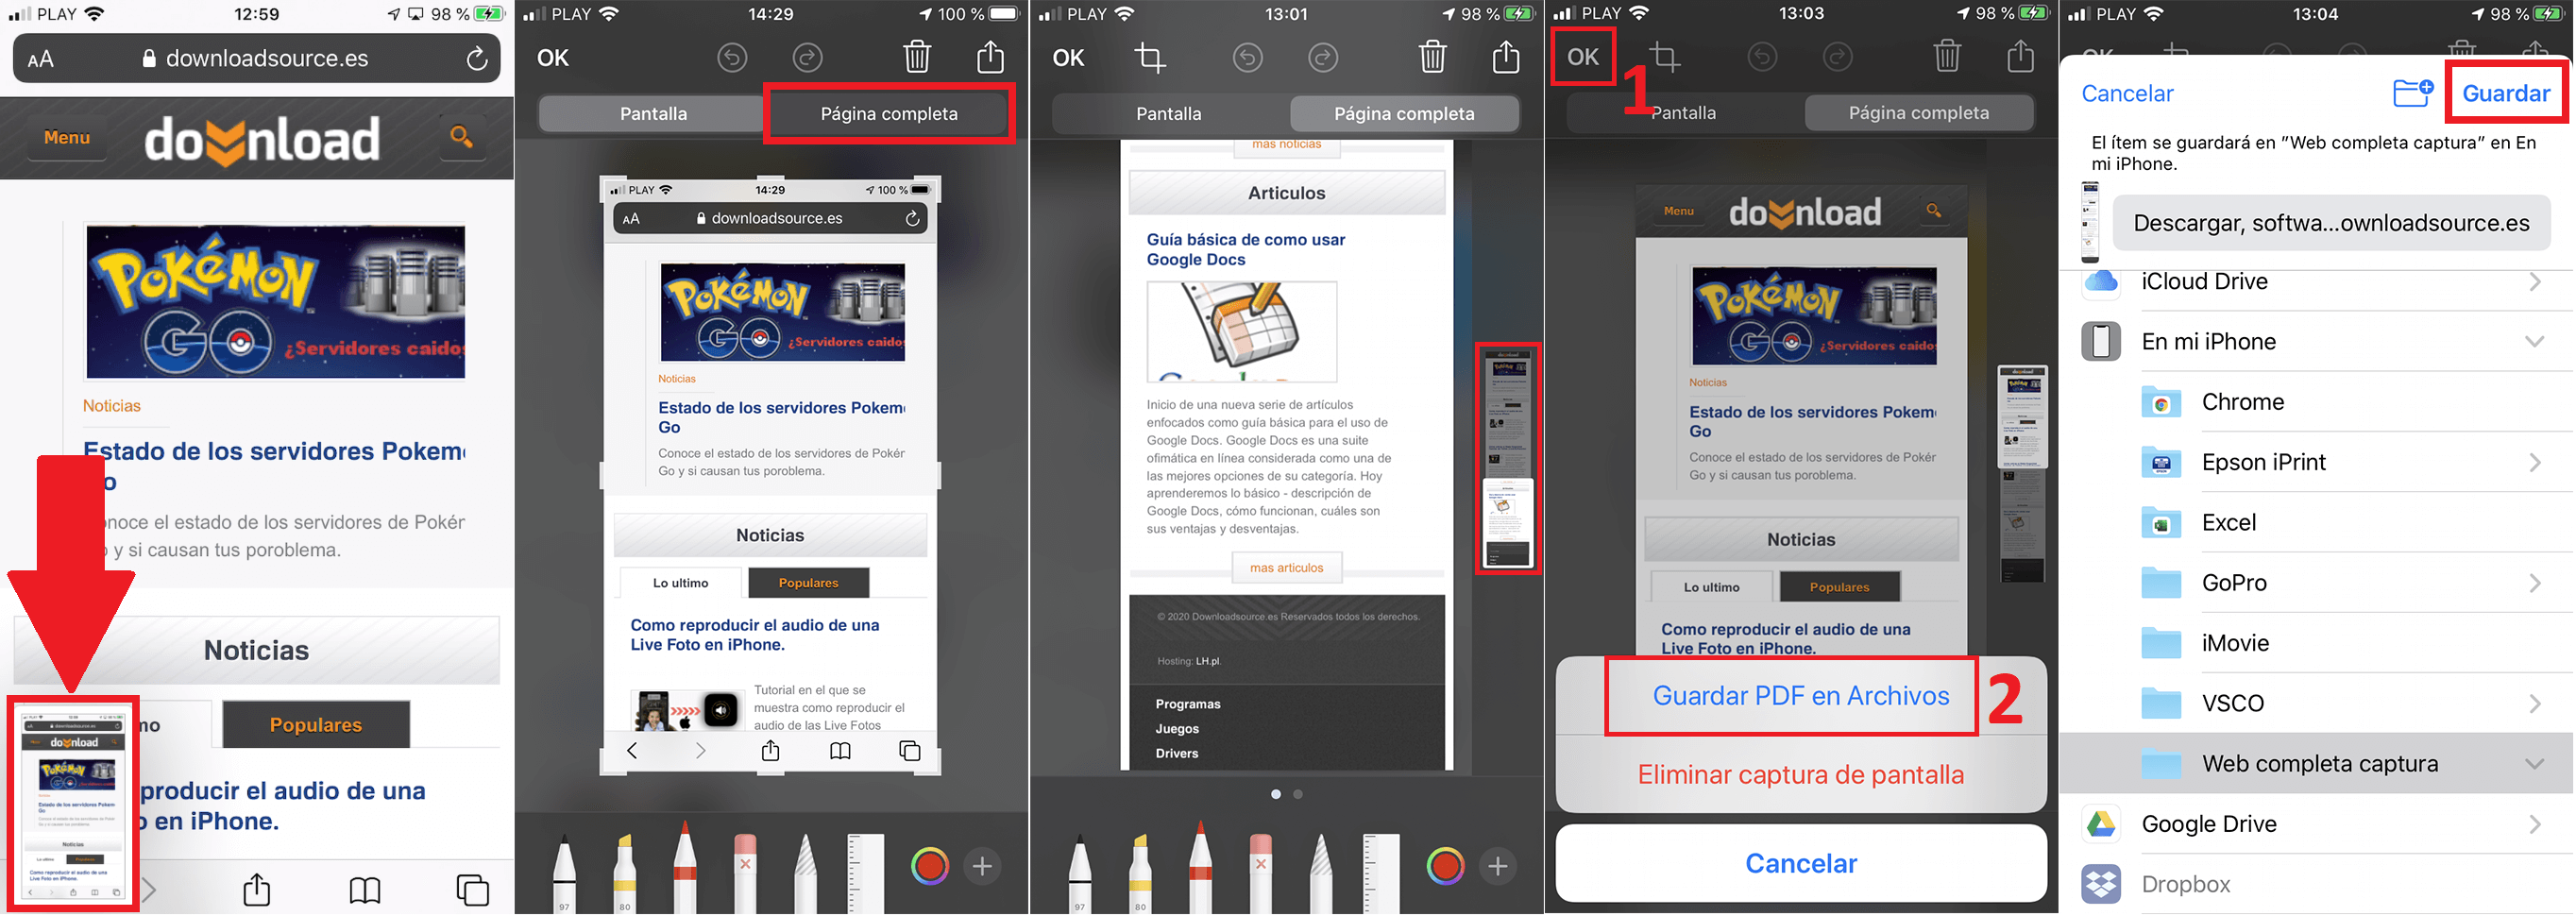 como capturar una web completa en iPhone con iOS